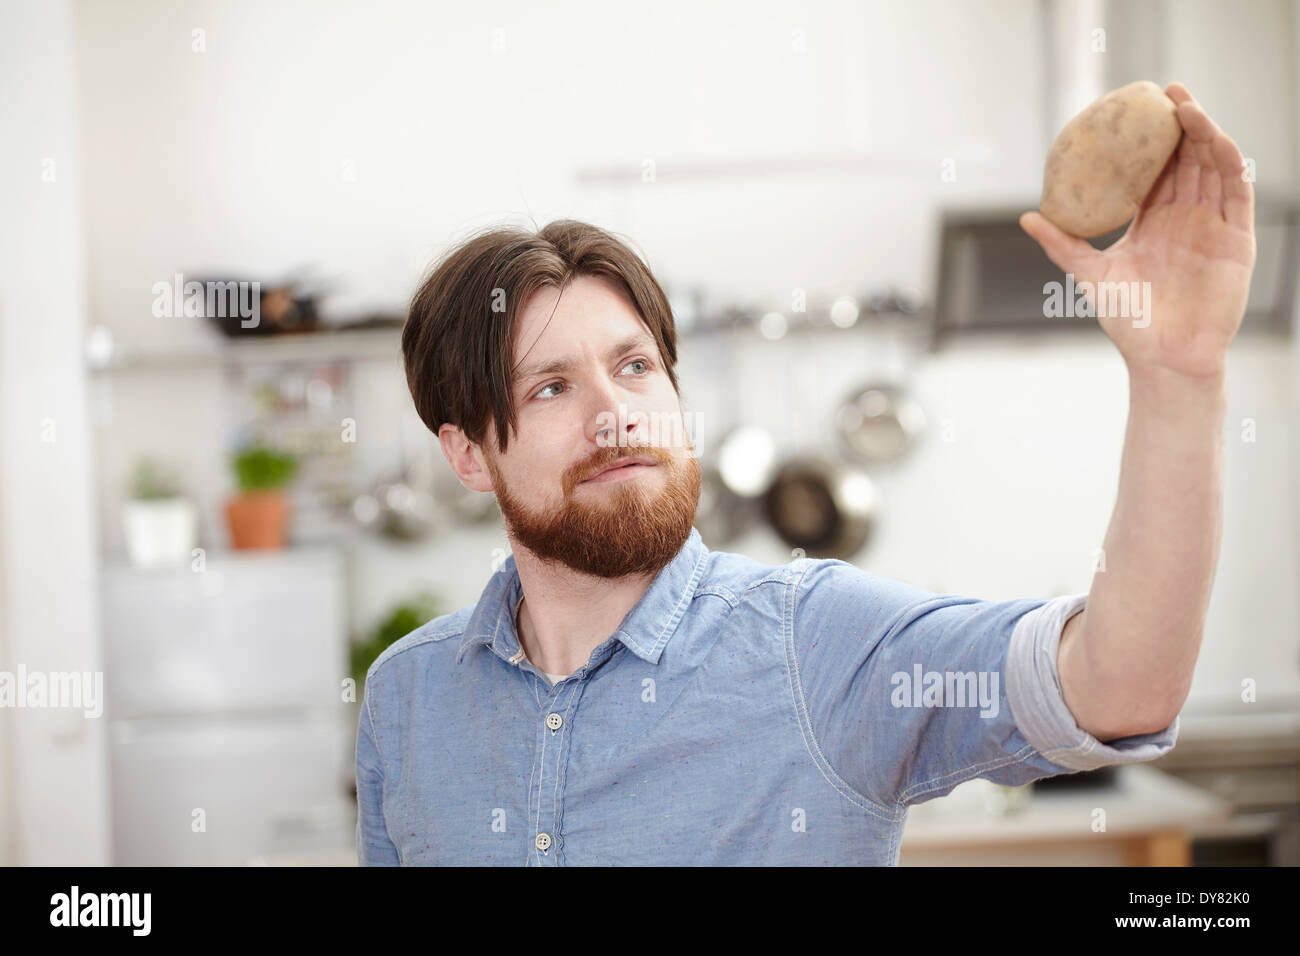 Man in kitchen holding potato Stock Photo - Alamy